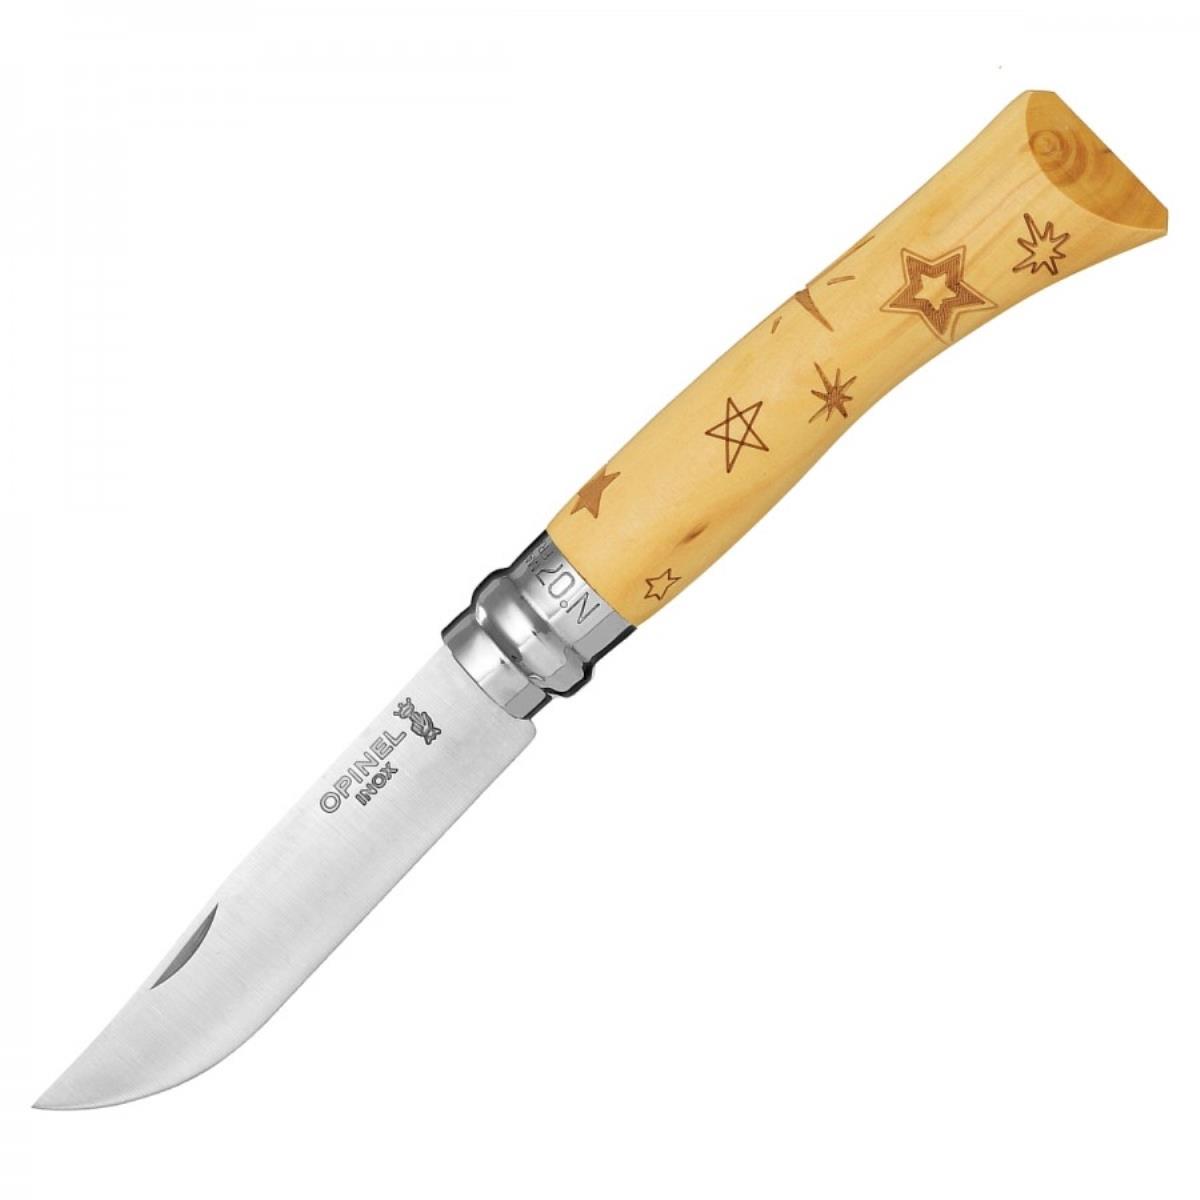 Нож №7 VRI Nature-Stars (звезды) нержавеющая сталь, рукоять самшит, длина клинка 8см OPINEL держатель для полотенец lemer nature цвет хром